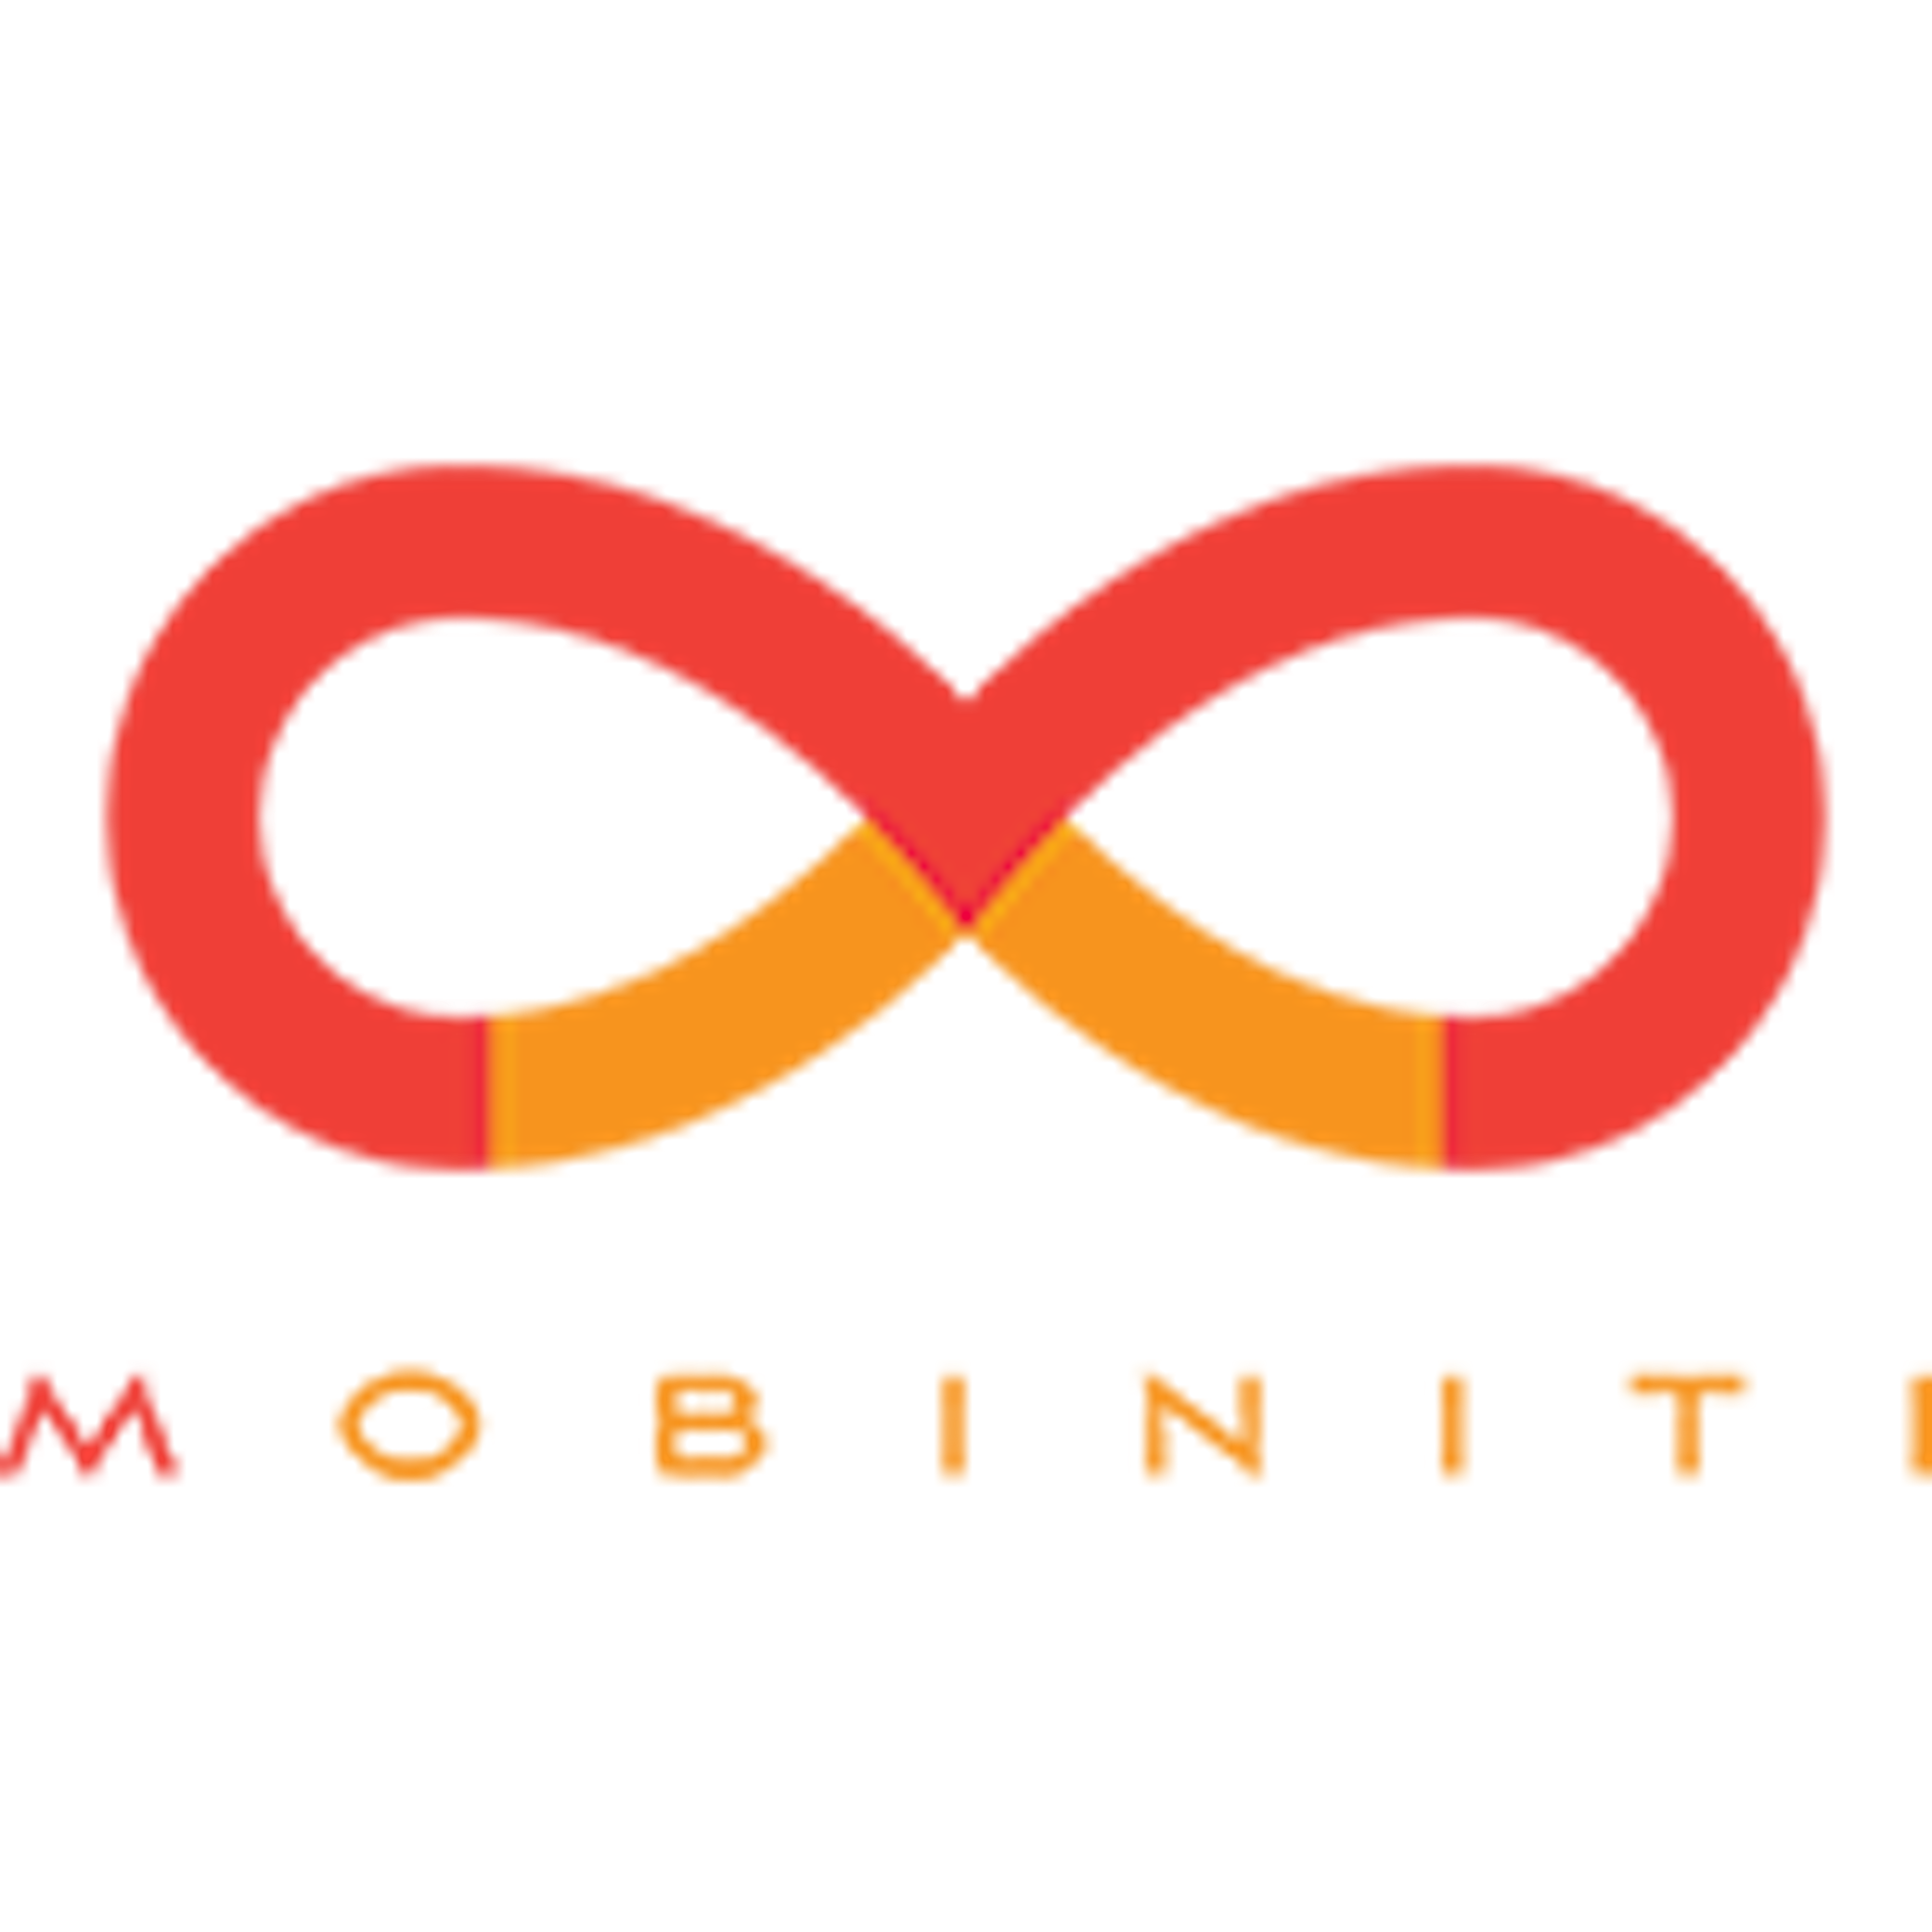 Mobiniti Logo